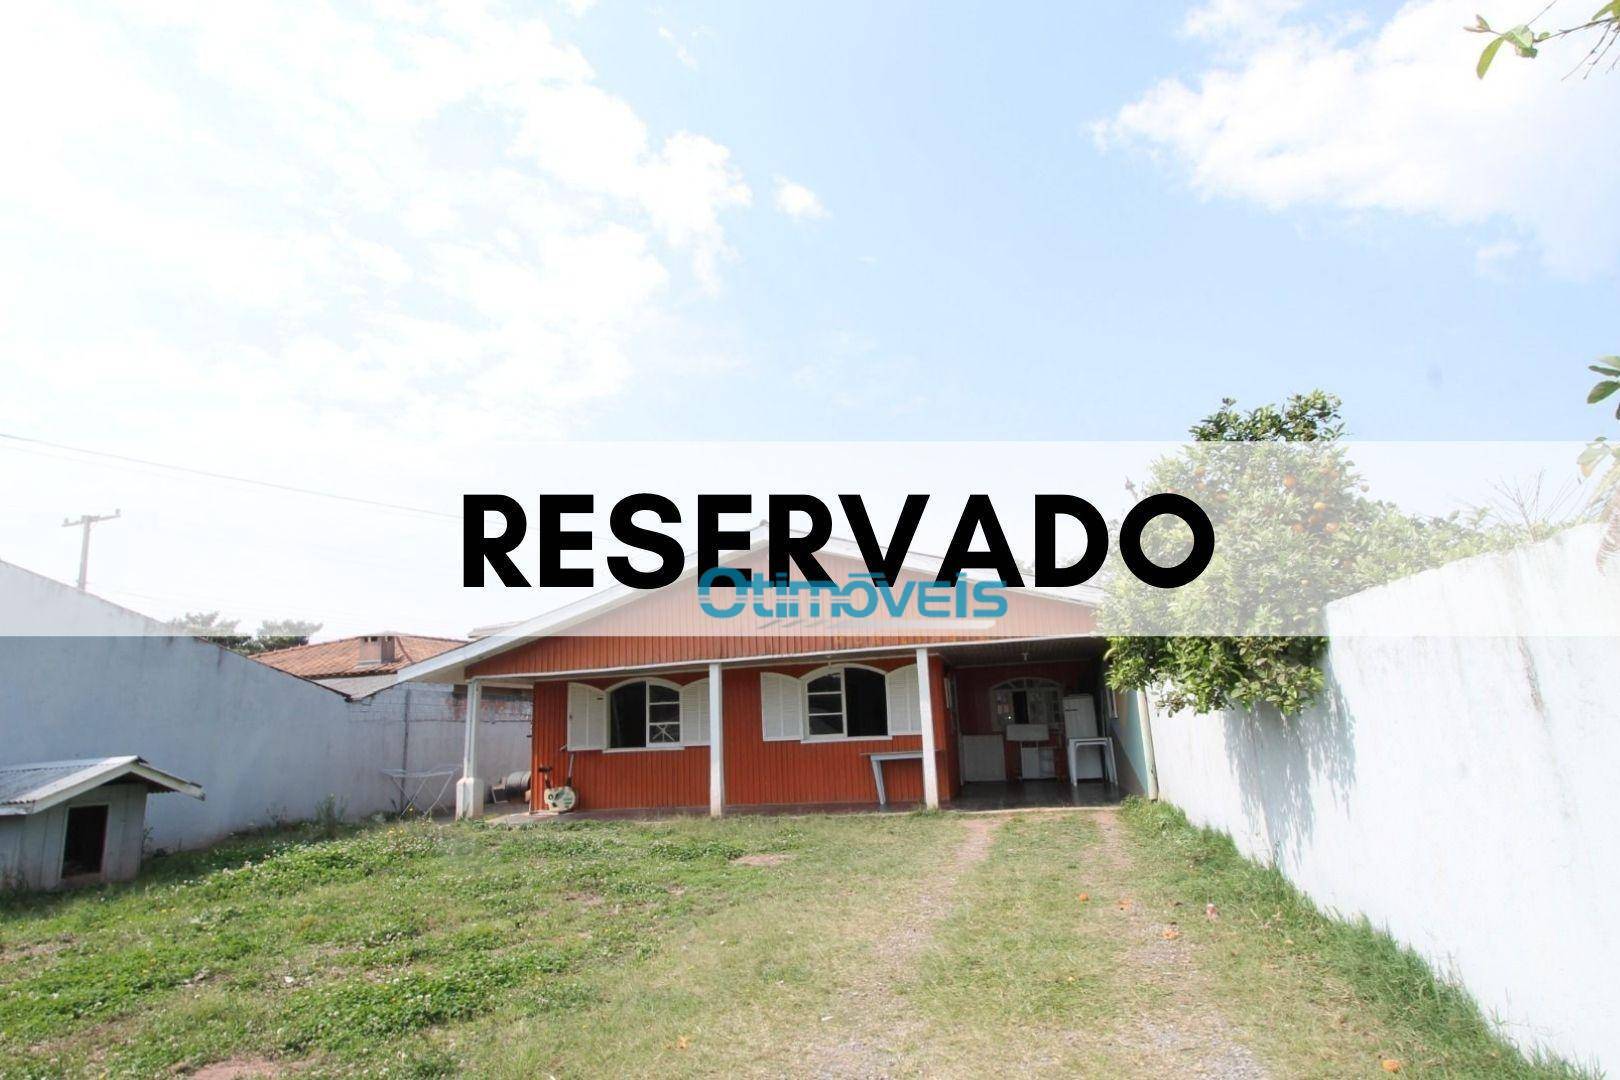 Terreno à venda, 507 m² por R$ 240.000,00 - Parque São Jorge - Almirante Tamandaré/PR